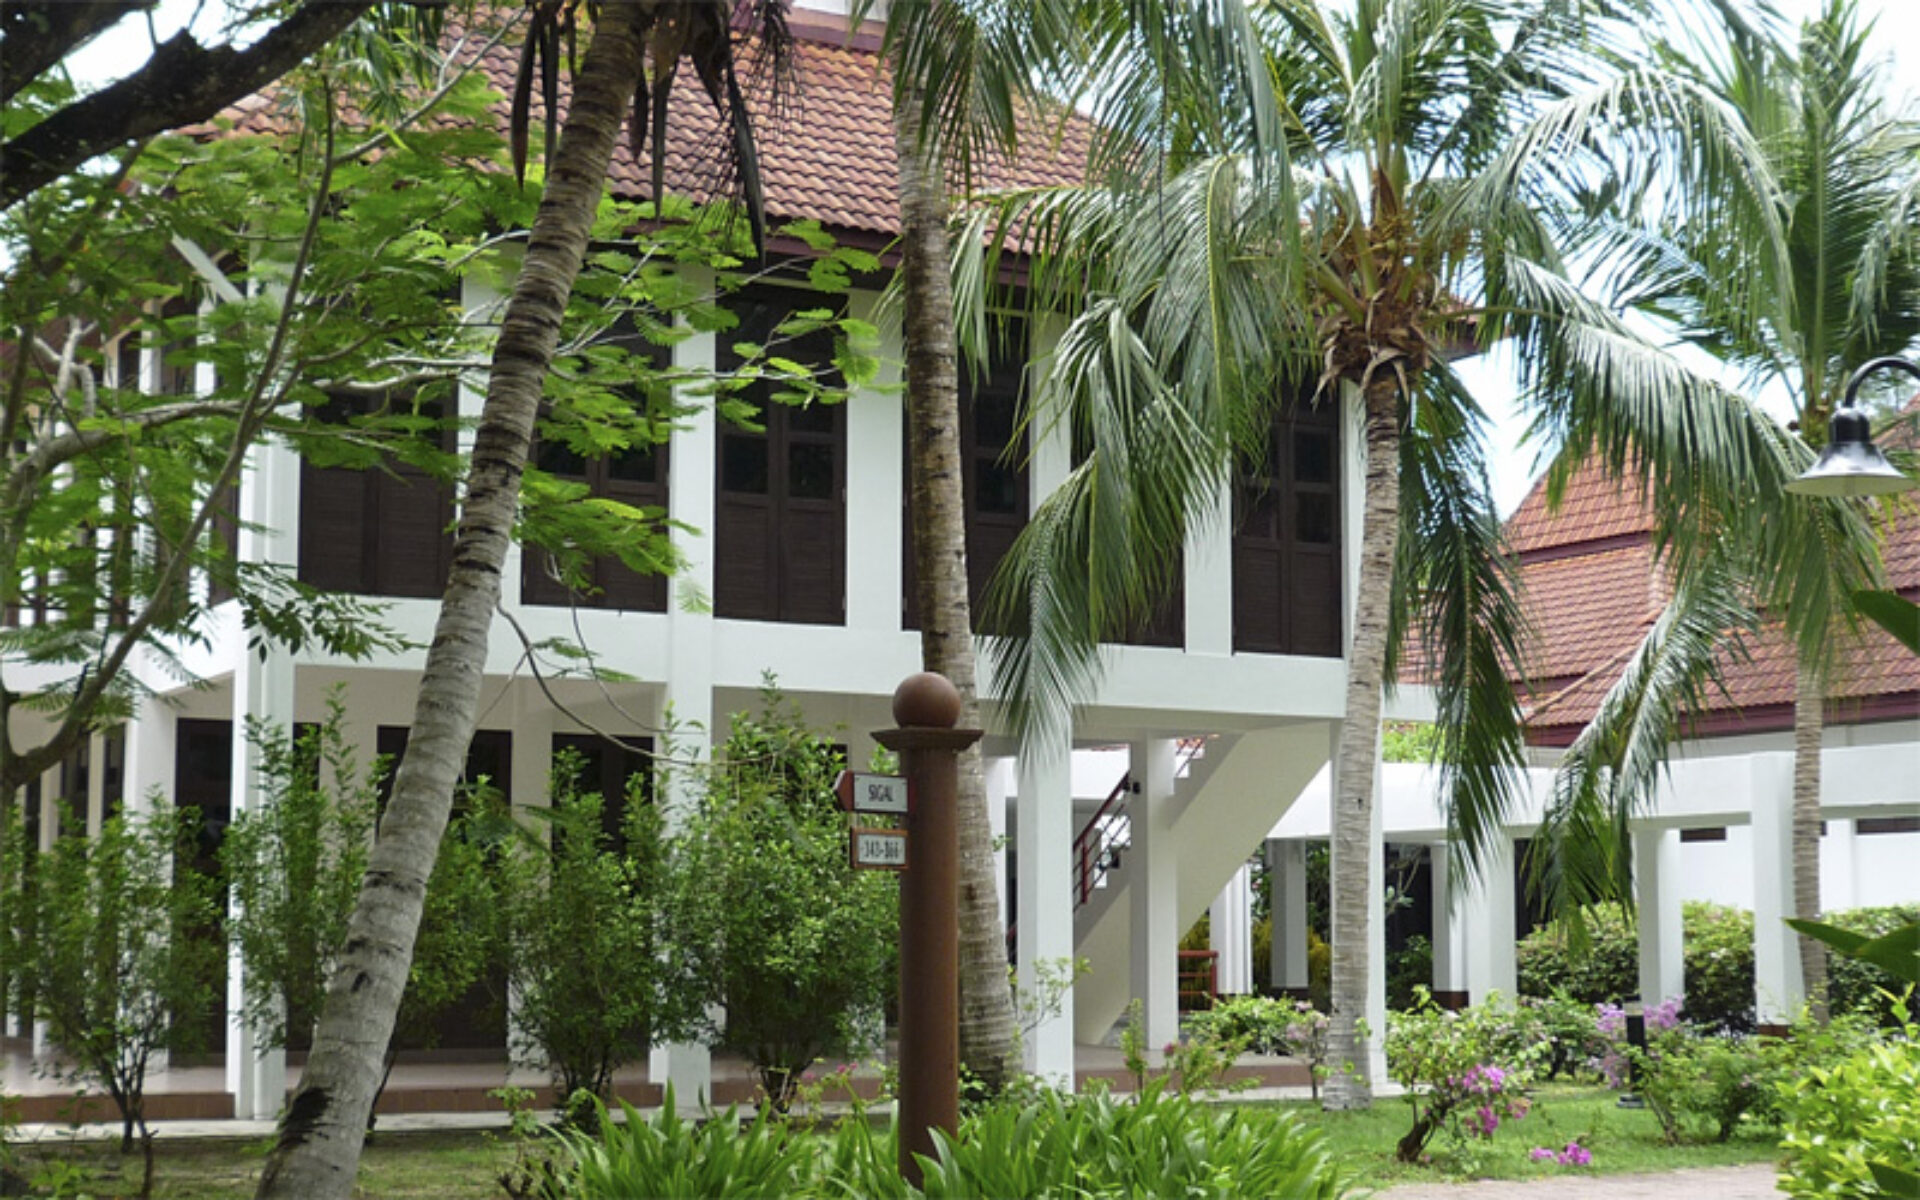 Hotel Maleisie Rondreis Vakantie Langkawi Federal Villa Beach Resort